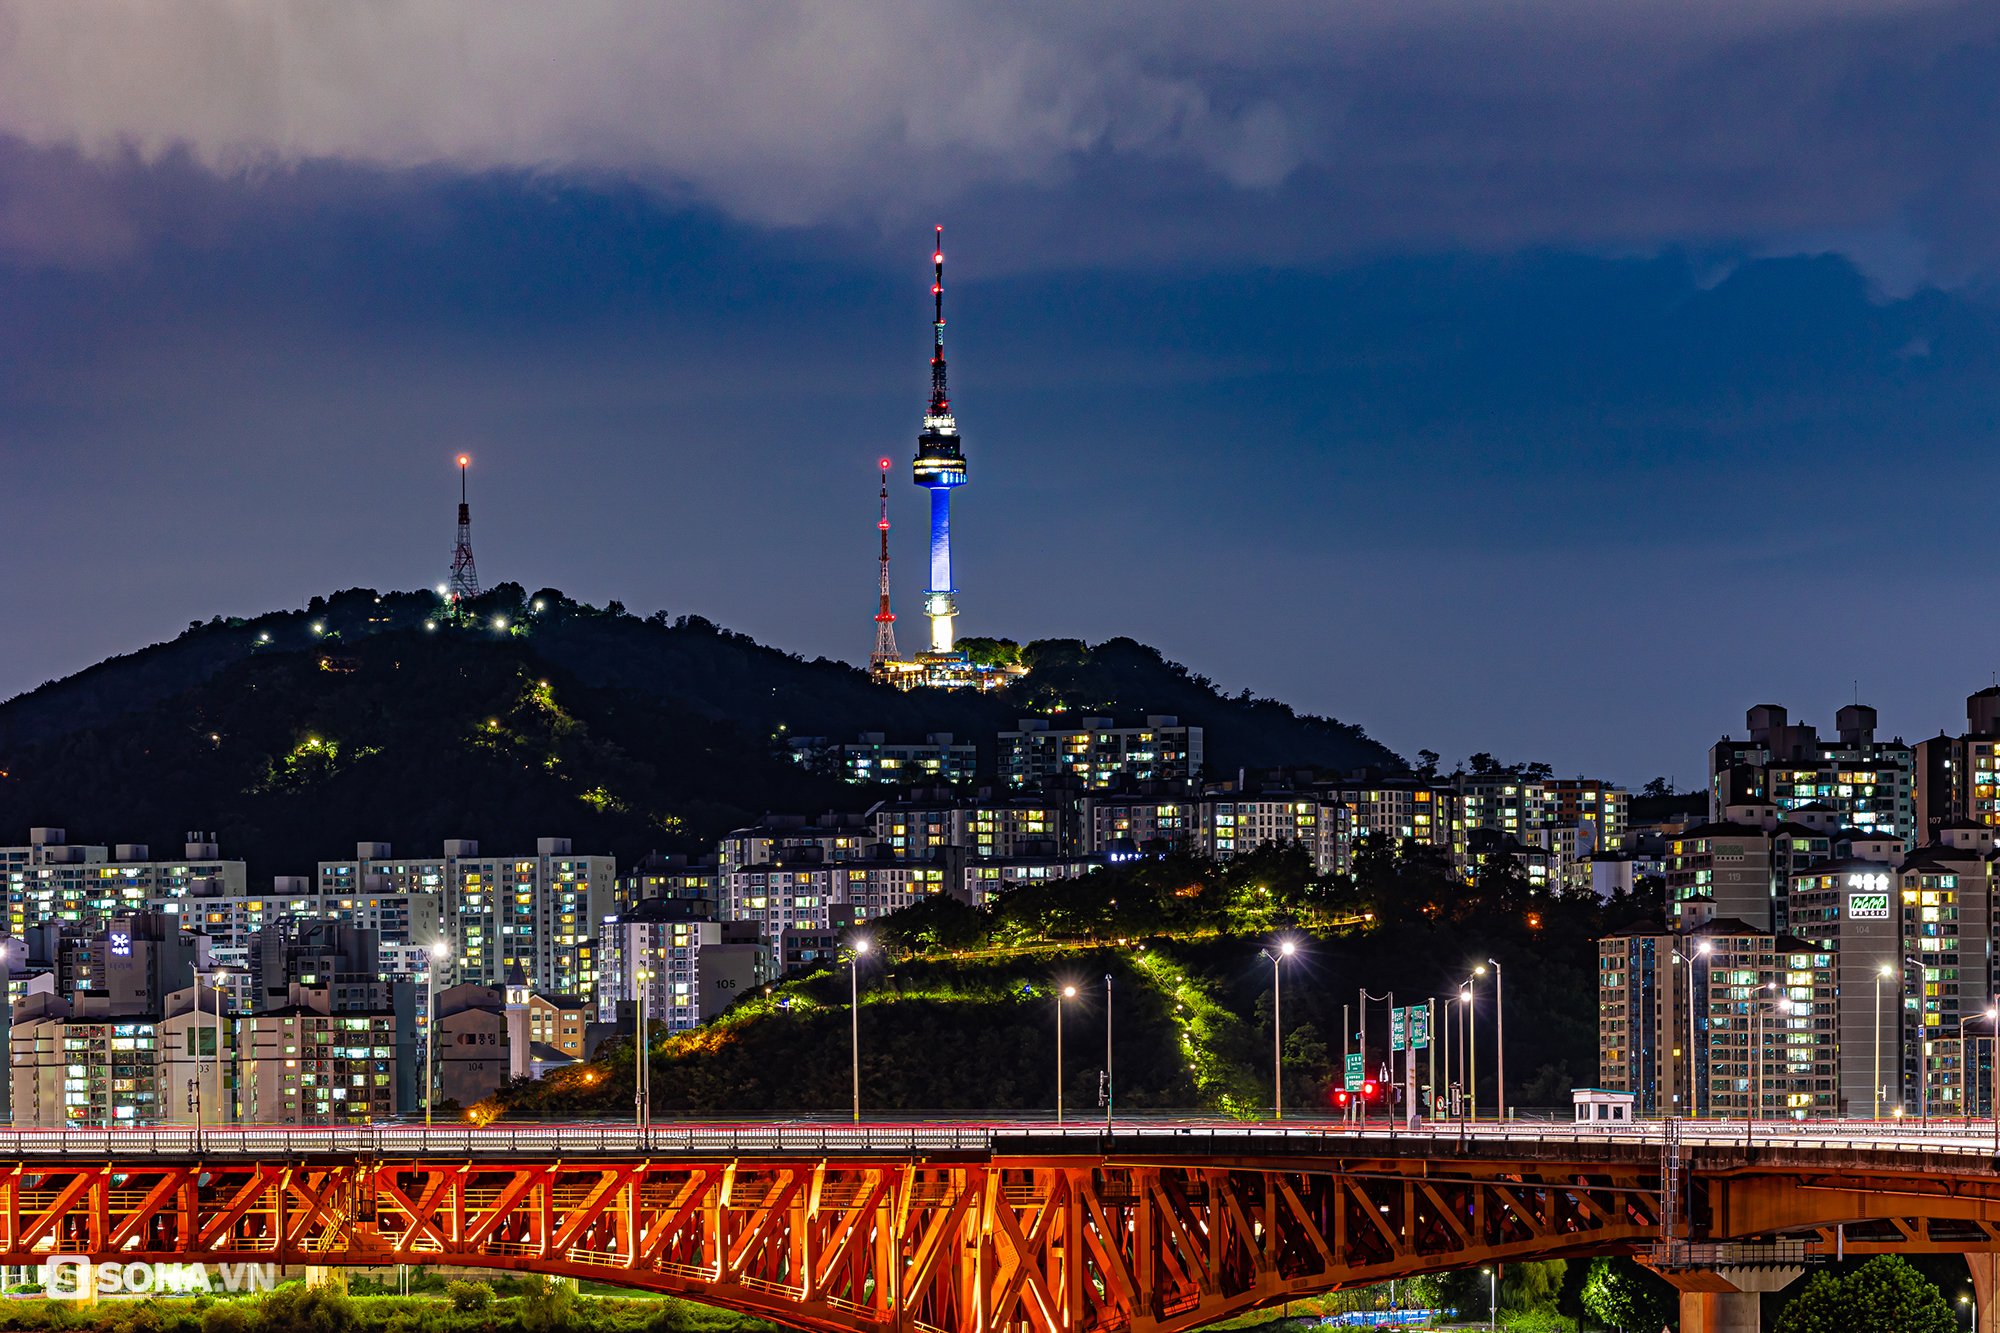 Tháp chọc trời Seoul: Cả nghìn móc khoá anh yêu em; nhìn thấy chữ Hà Nội ở nơi đặc biệt - Ảnh 1.